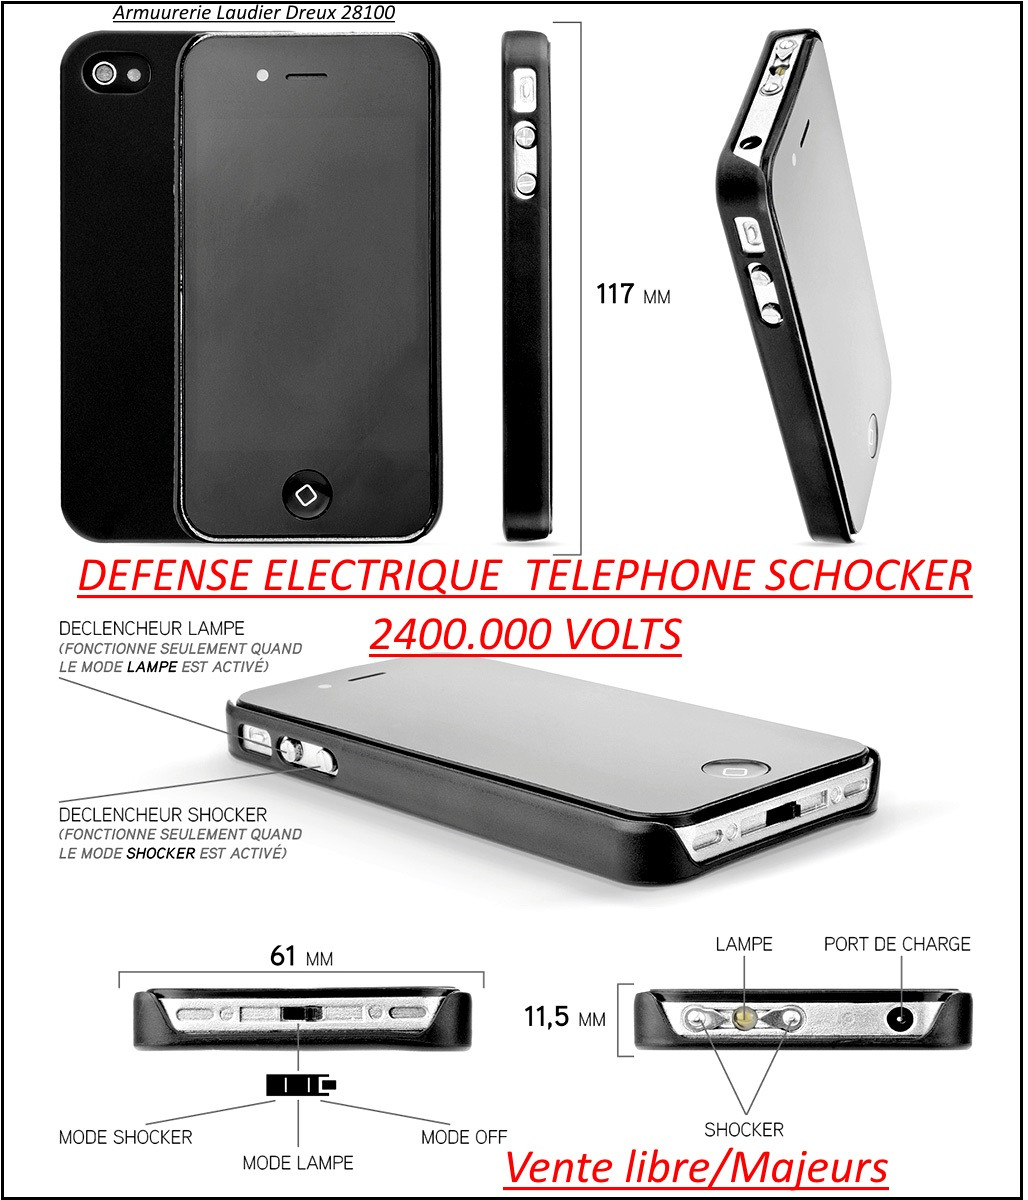 Appareil- défense-électrique-téléphone Shocker-2400.000 VOLTS-Plus lampe LED-"Promotion"-Ref 25847